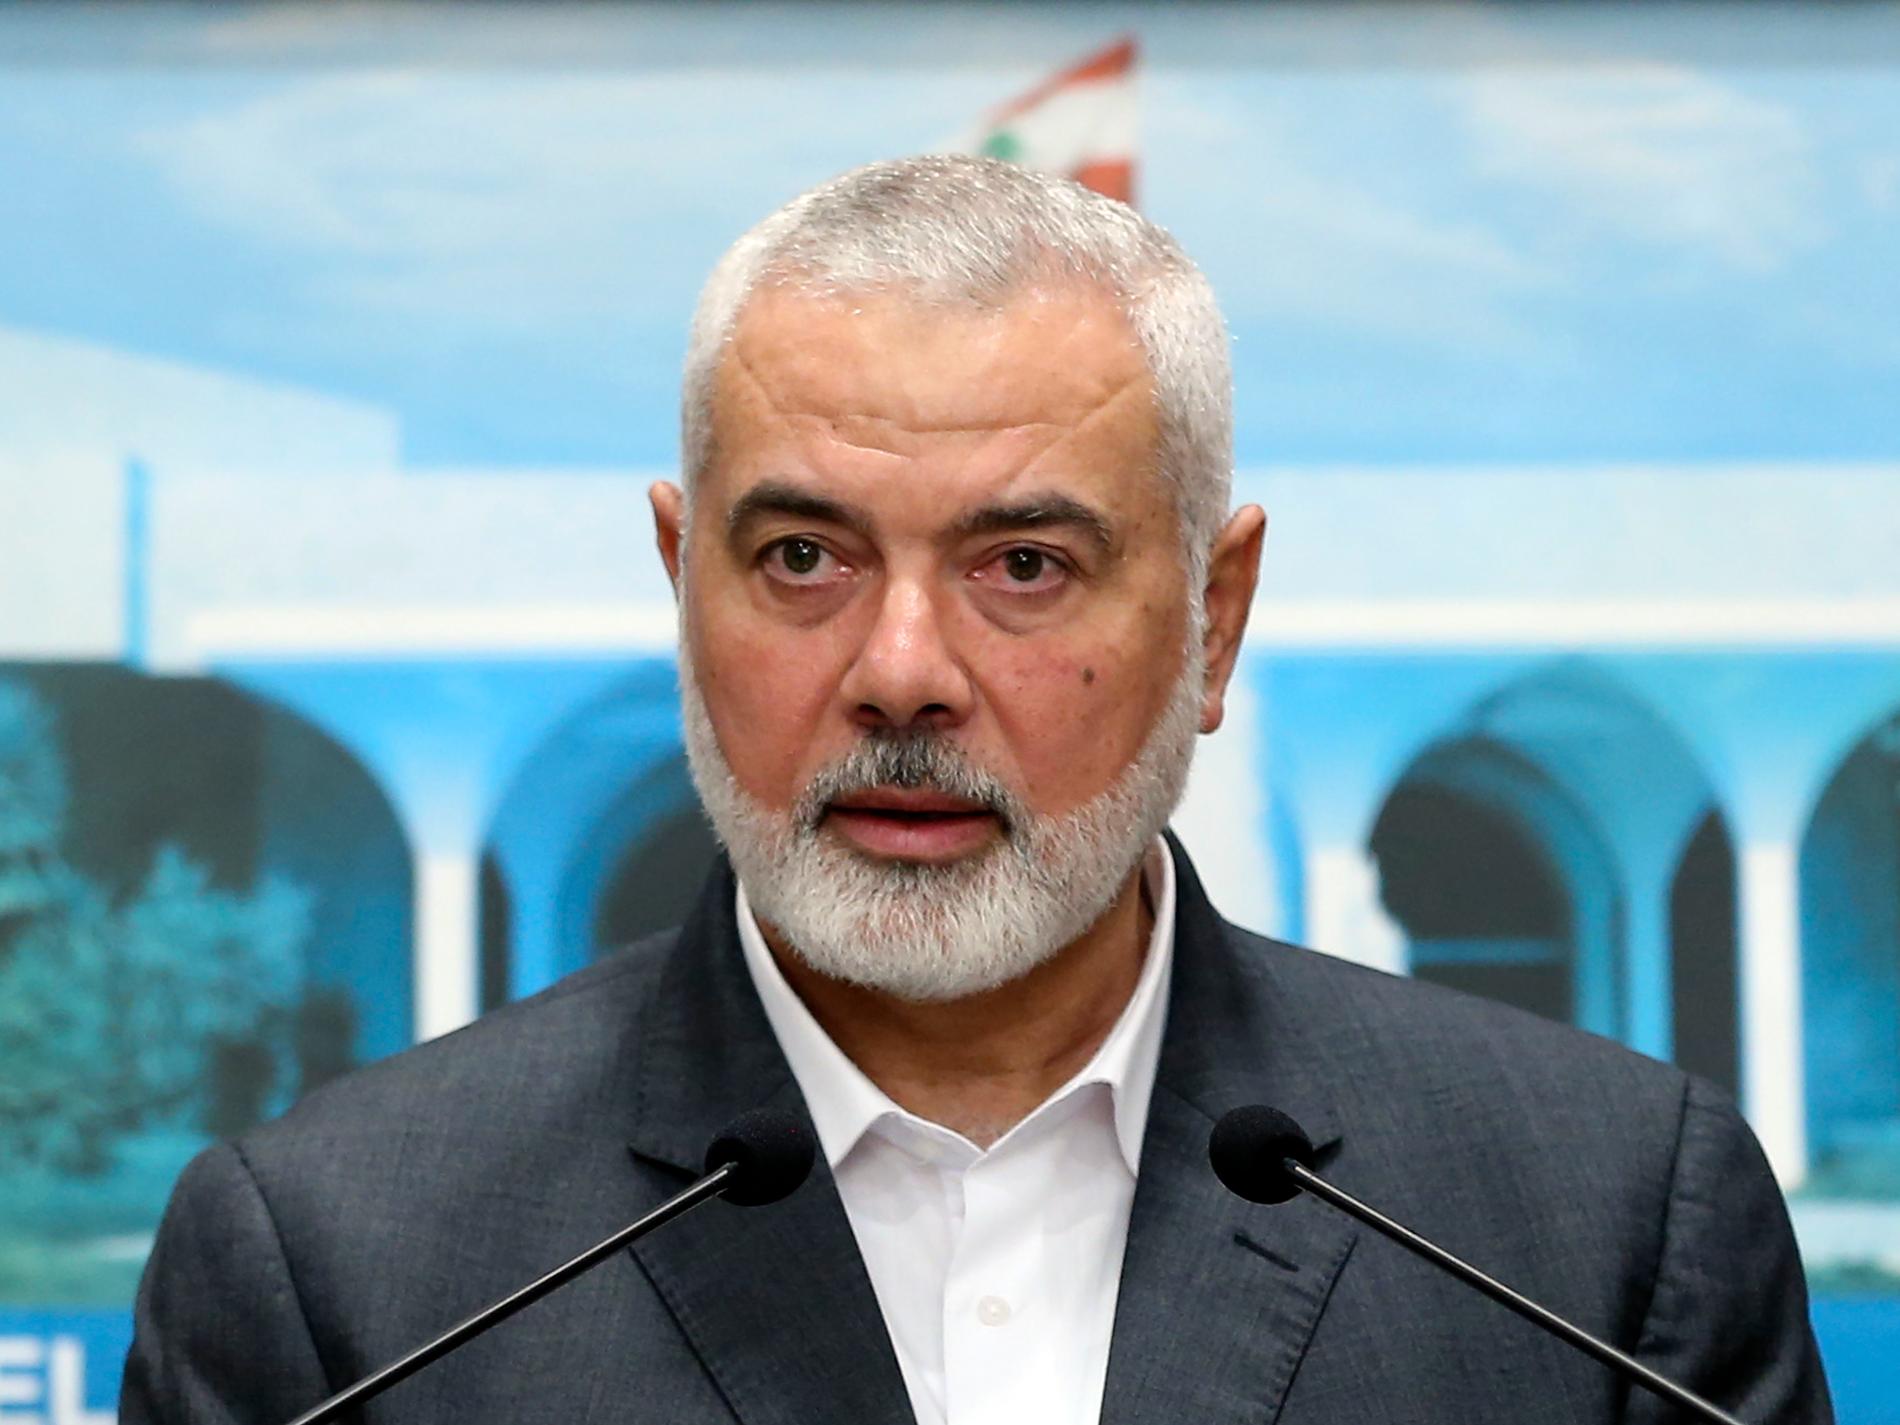 Hamasledare har lämnat samtalen i Egypten